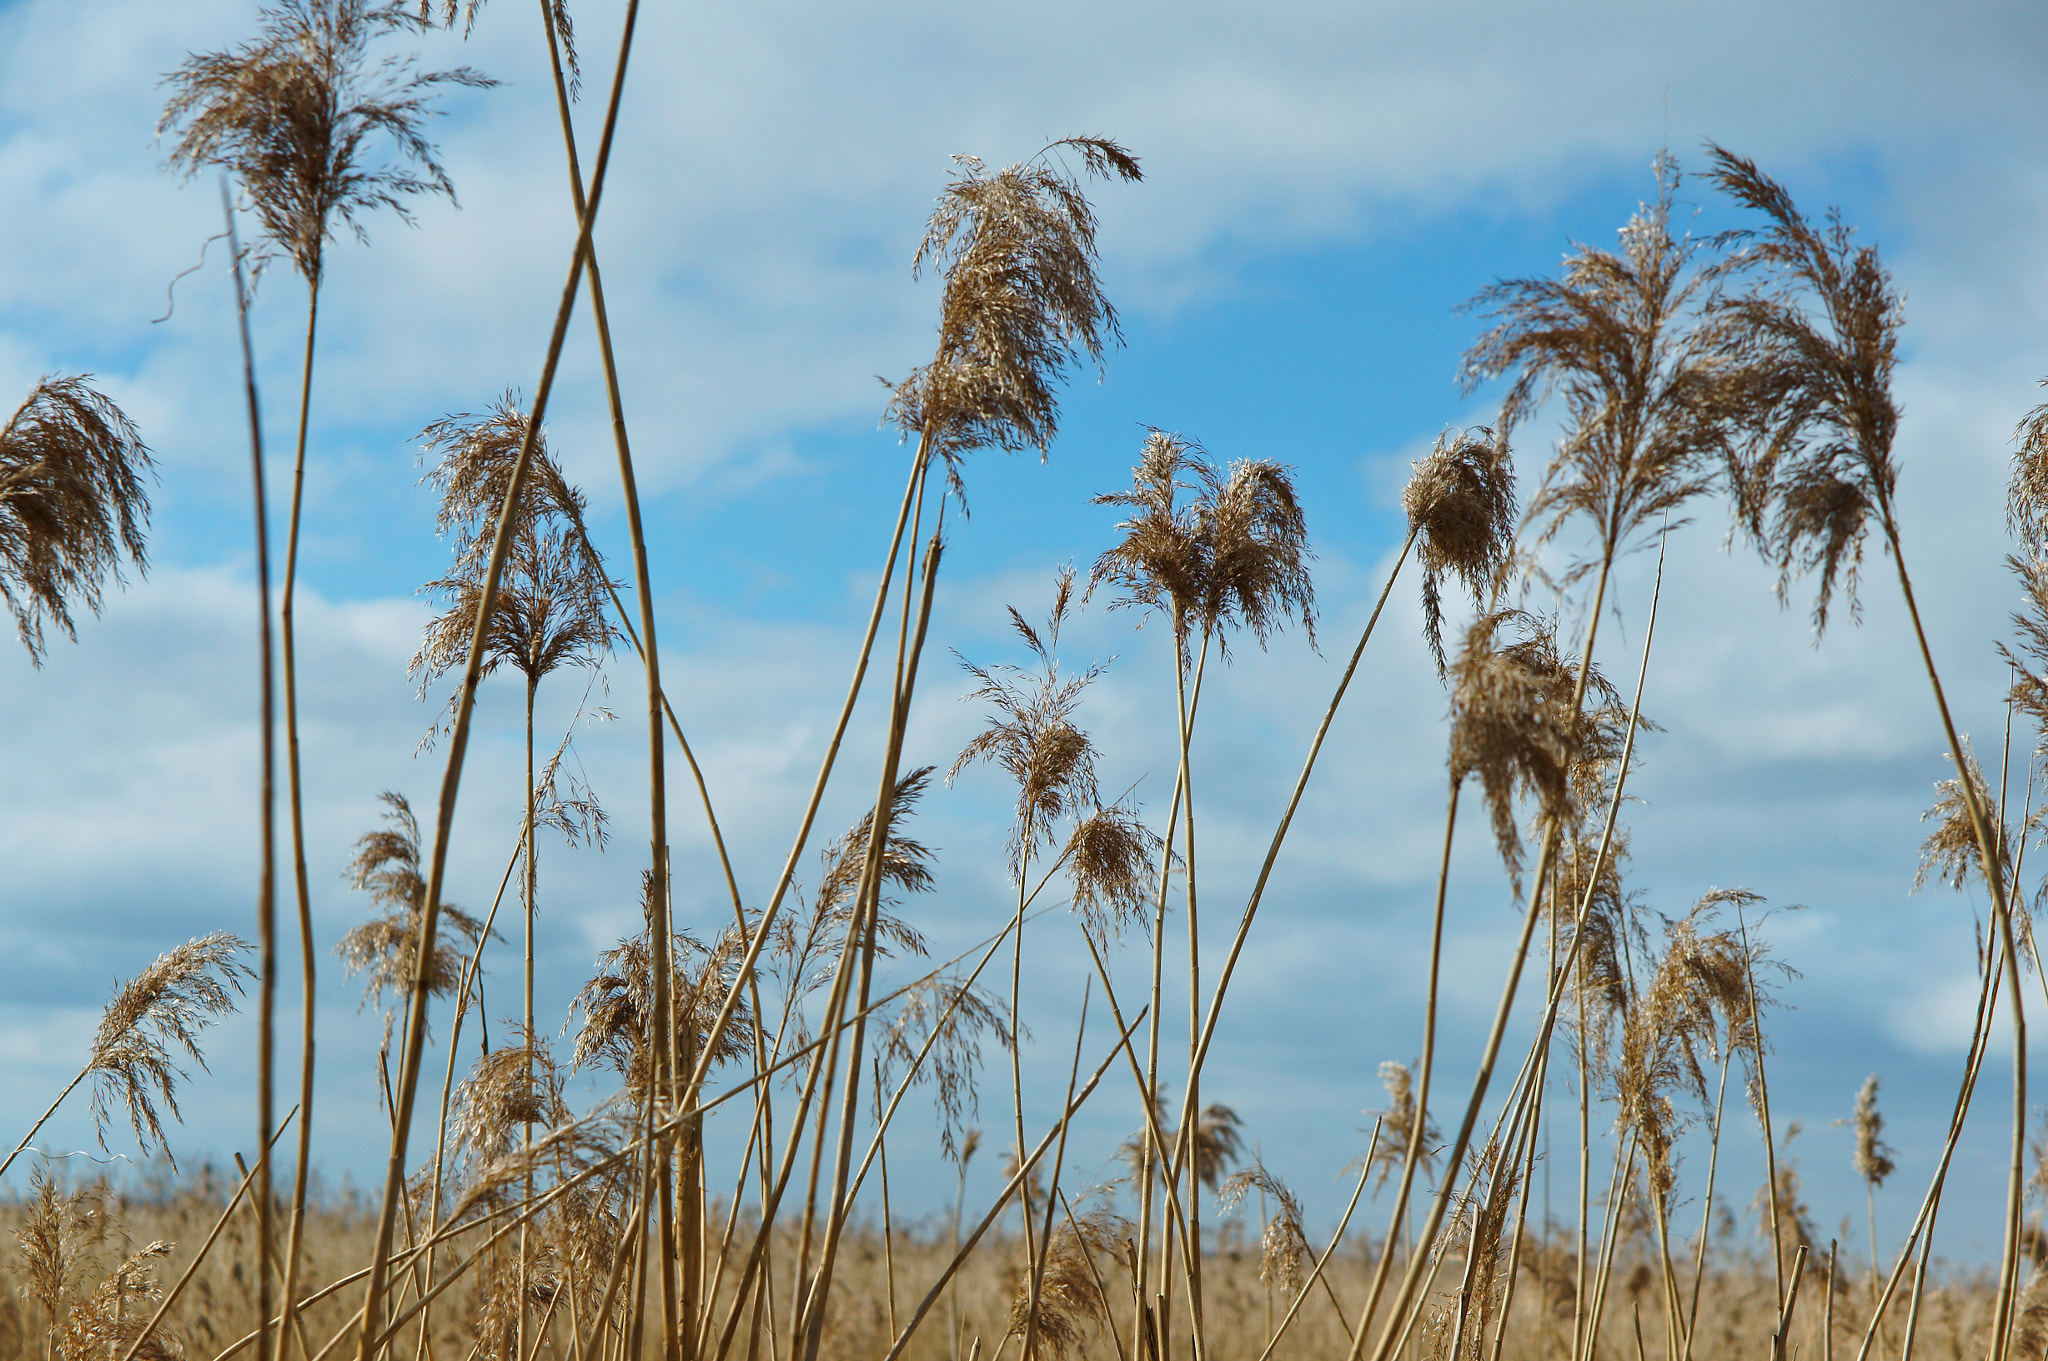 Sony Alpha NEX-3N + E 50mm F1.8 OSS sample photo. Grass, dry, dead wood, blue, sky, spring, sun photography